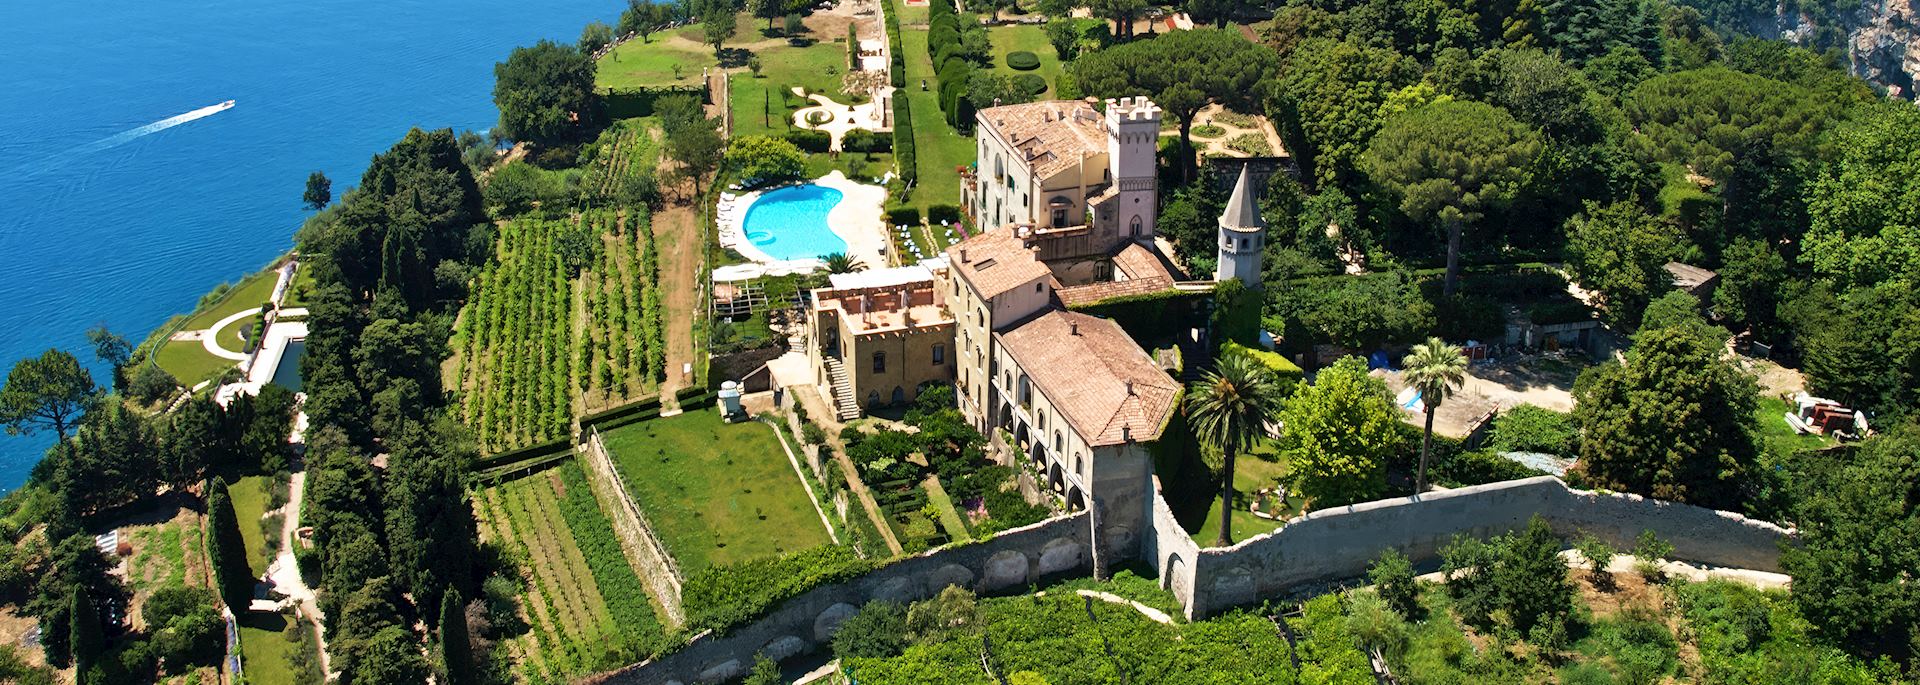 Villa Cimbrone